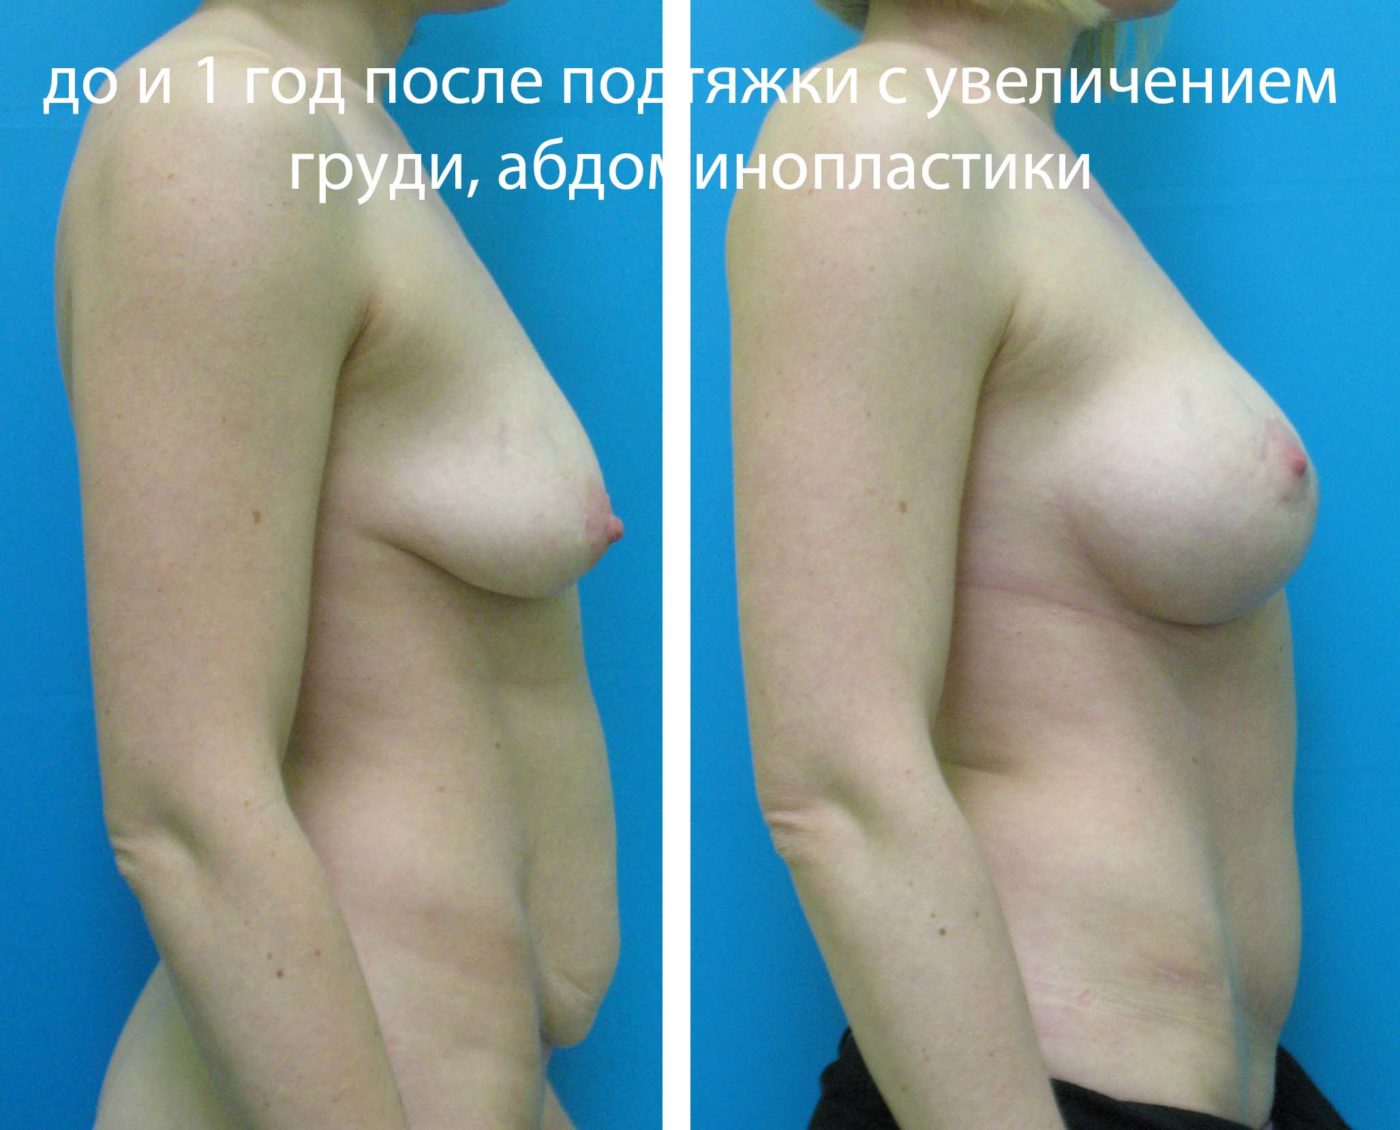 что отвечает за рост груди у женщин фото 72